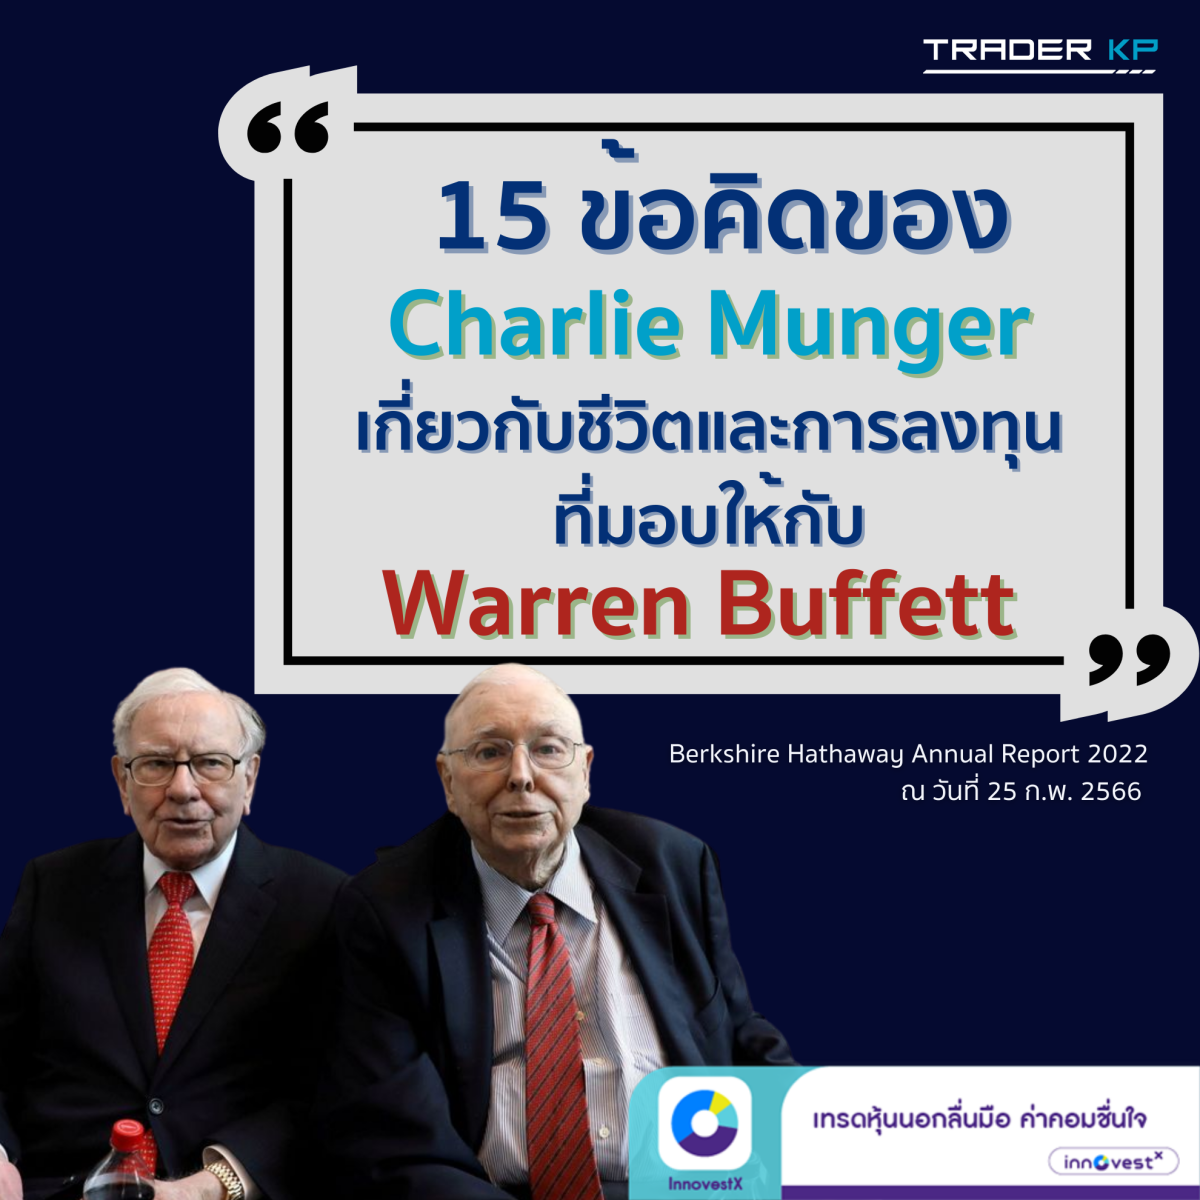 💡 15 ข้อคิดเกี่ยวกับชีวิตและการลงทุนที่ Charlie Munger มอบให้กับ Warren Buffett และถูกแชร์ในจดหมายถึงผู้ถือหุ้น Berkshire Hathaway ประจำปี 2022